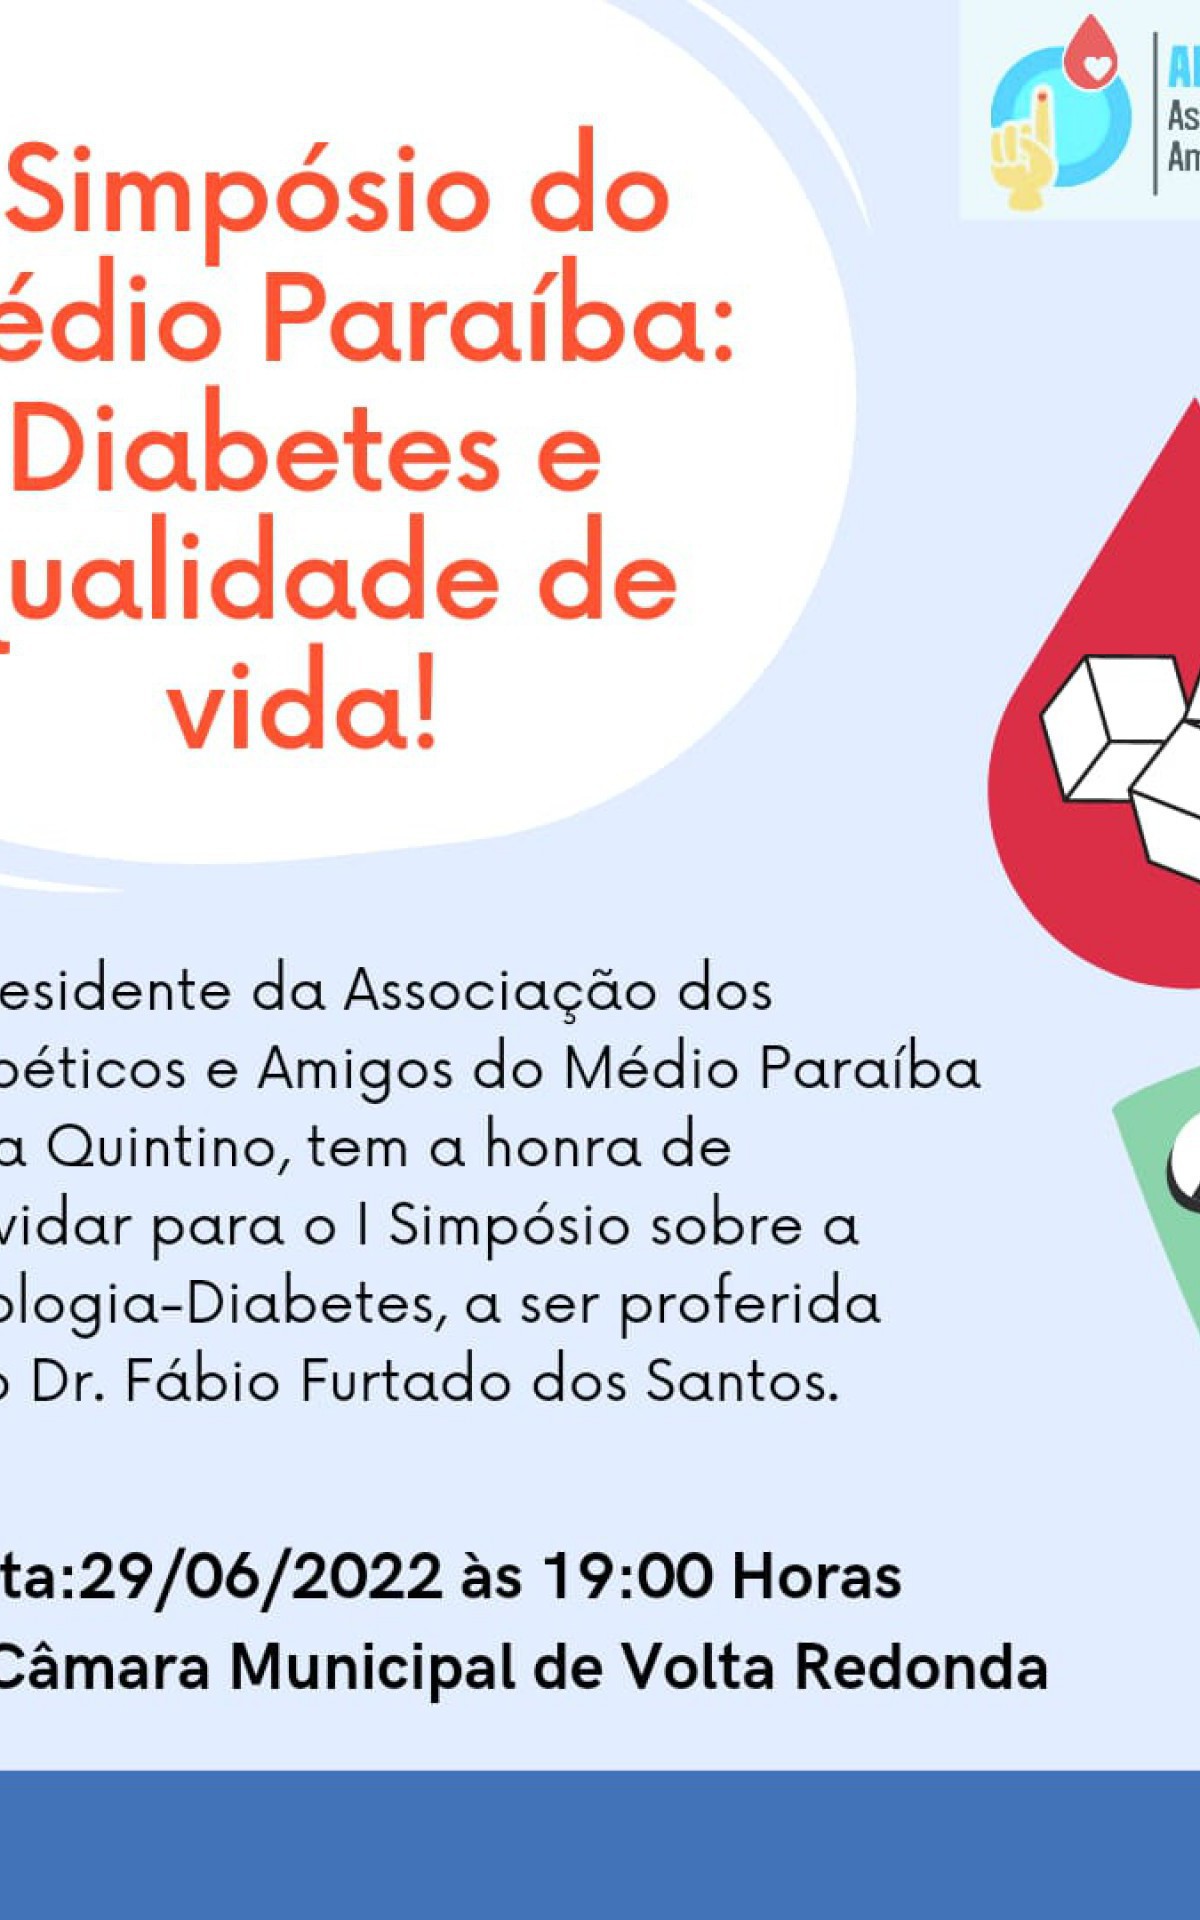 Simpósio sobre diabetes será na Câmara Municipal de Volta Redonda  - Divulgação